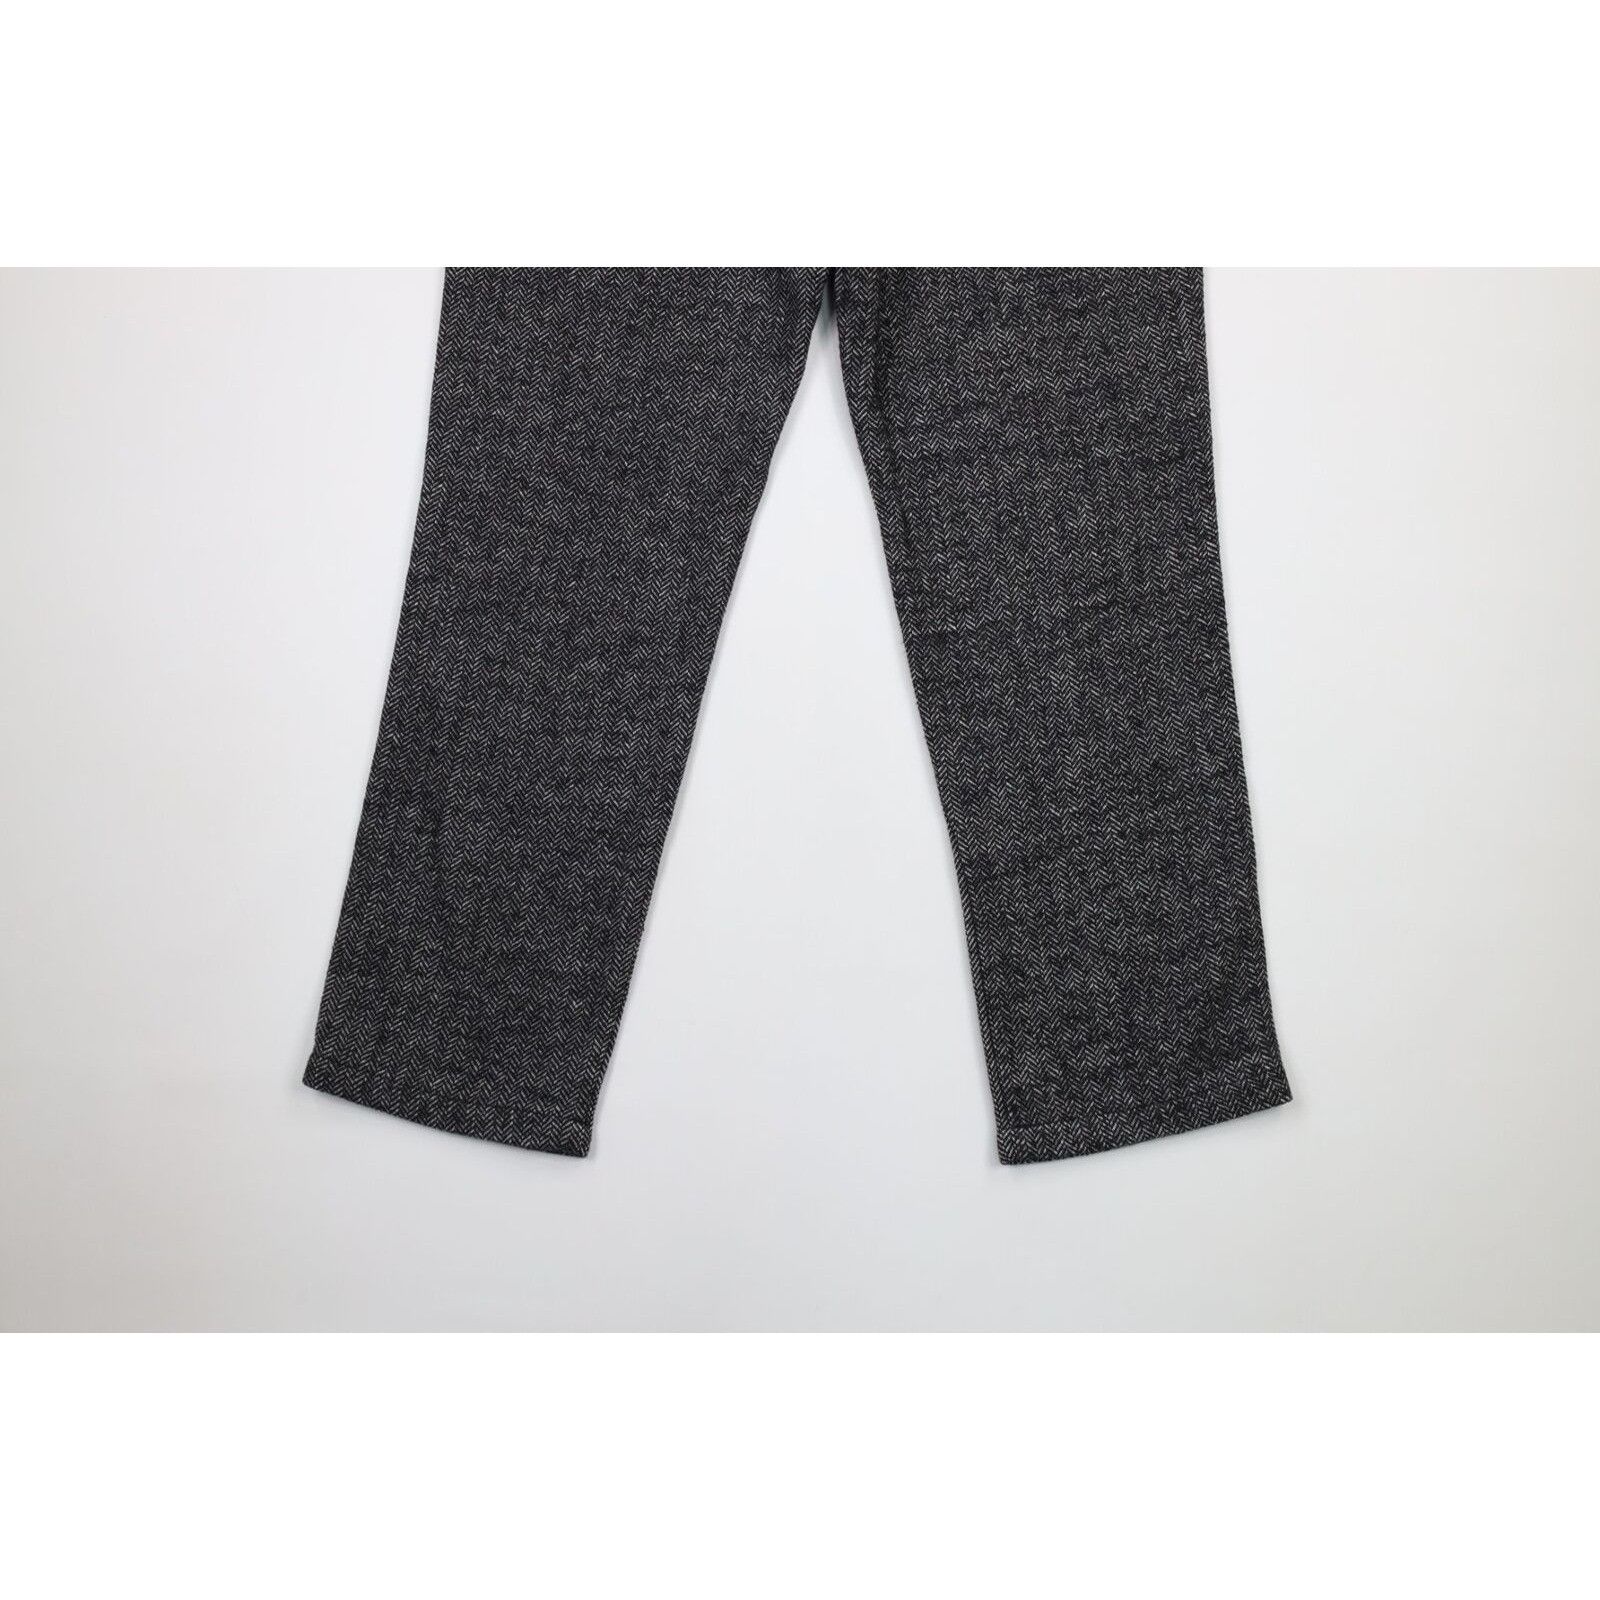 Vintage Vintage 90s Streetwear Tweed Herringbone Chino Pants Size US 34 / EU 50 - 8 Thumbnail